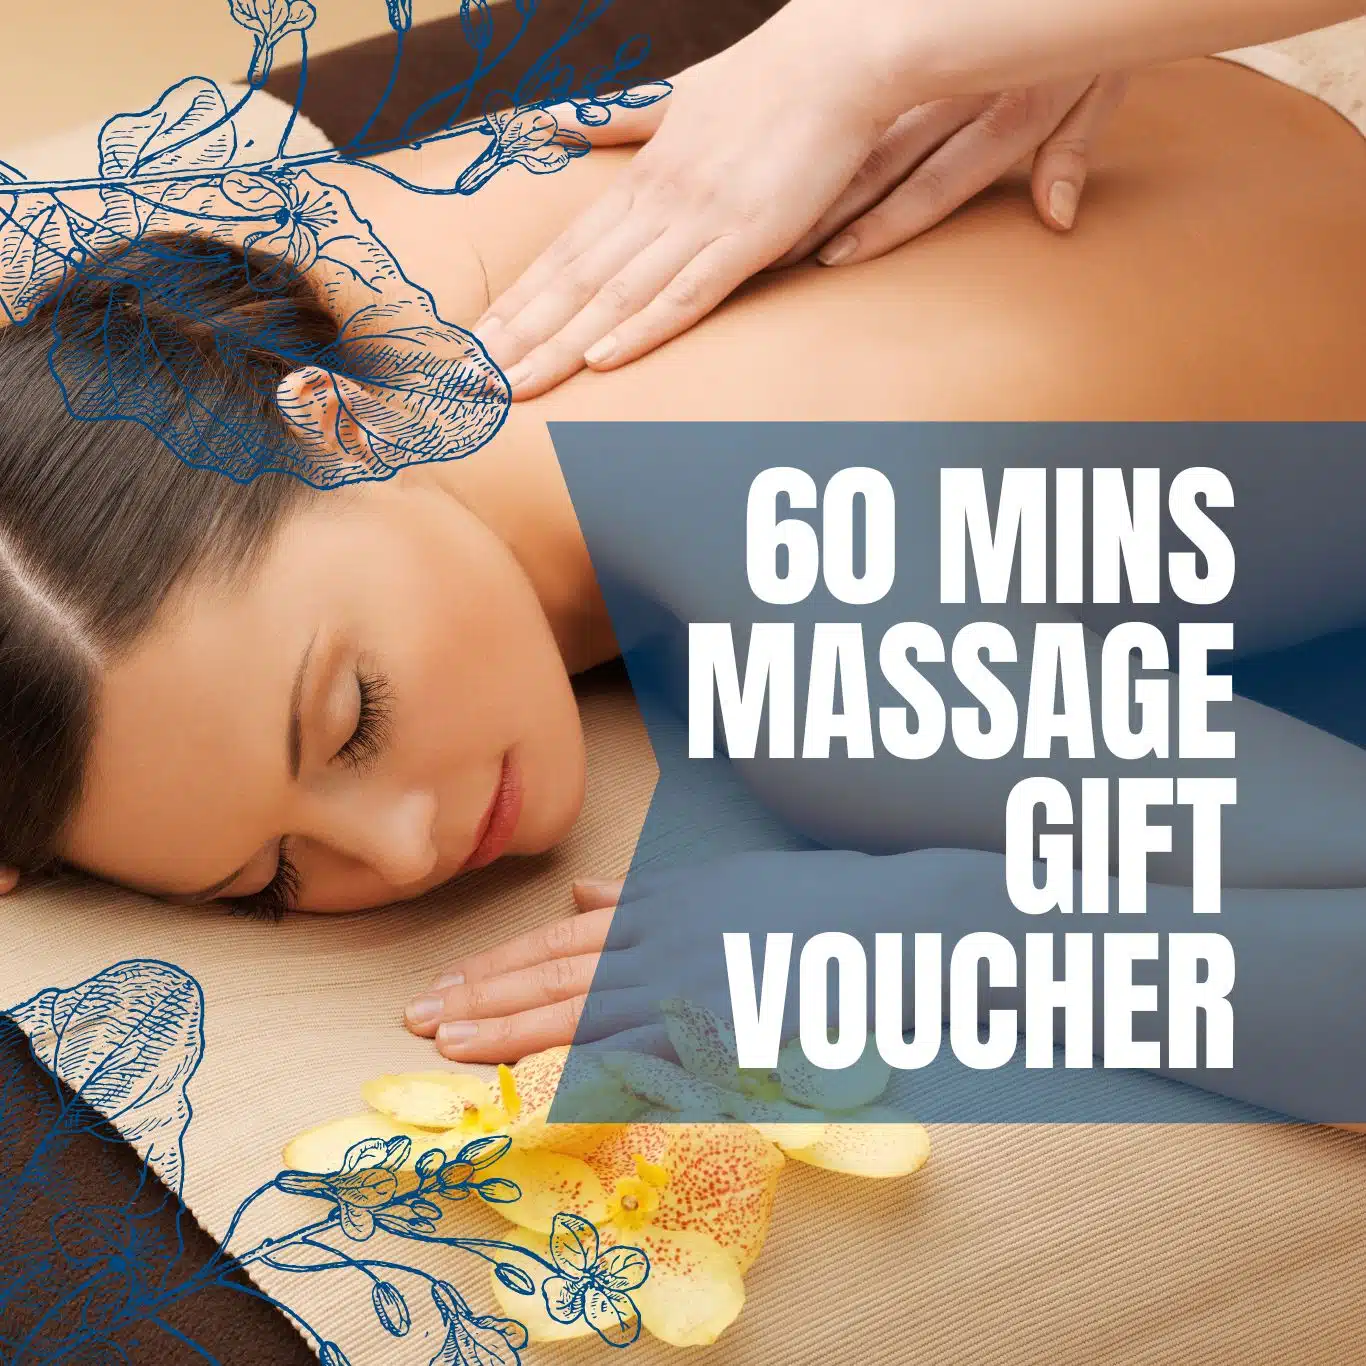 60 minutes massage gift voucher